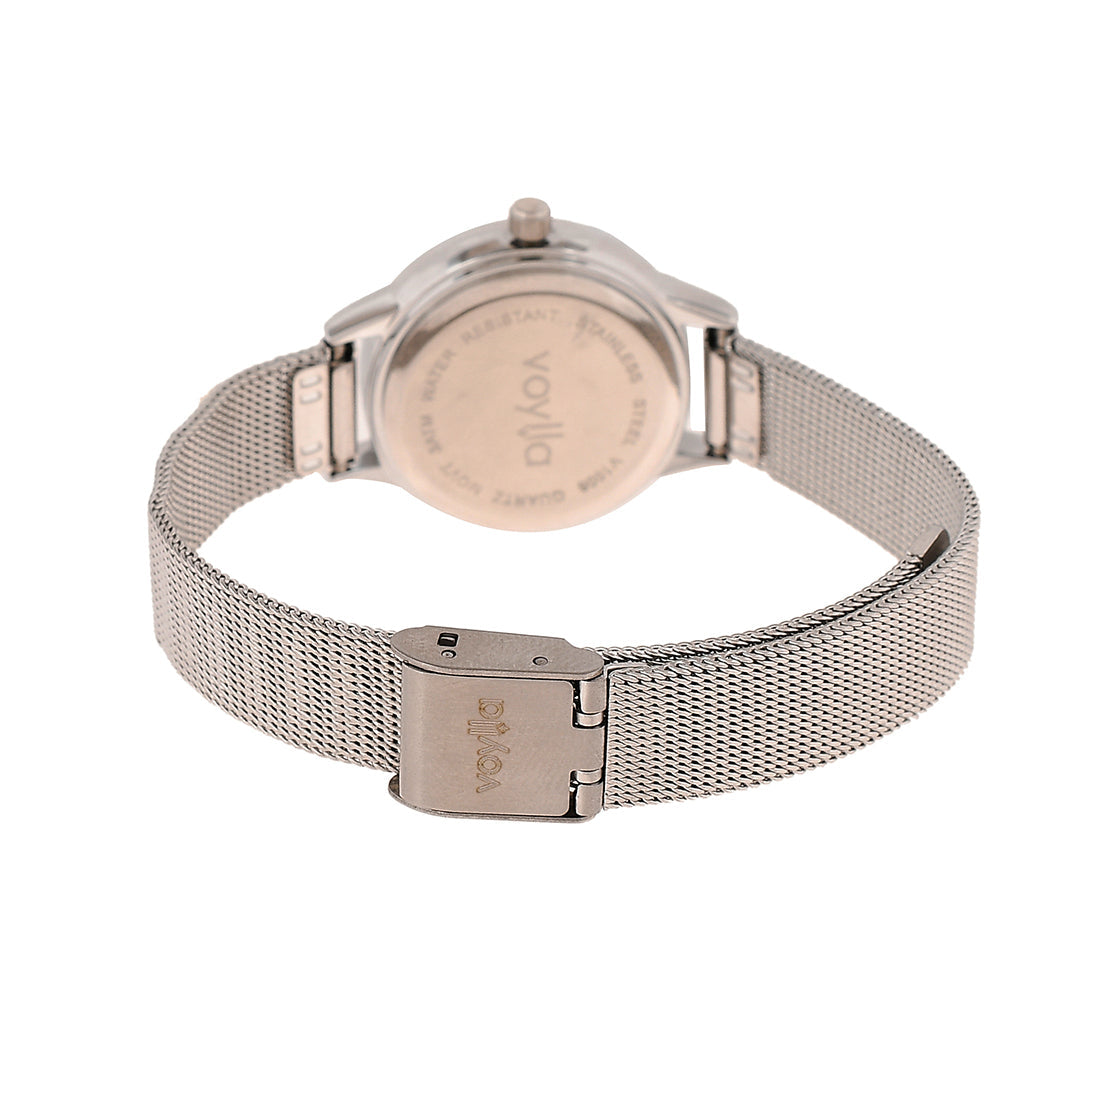 Voylla Silver Studded Dial Fashion Watch - Voylla